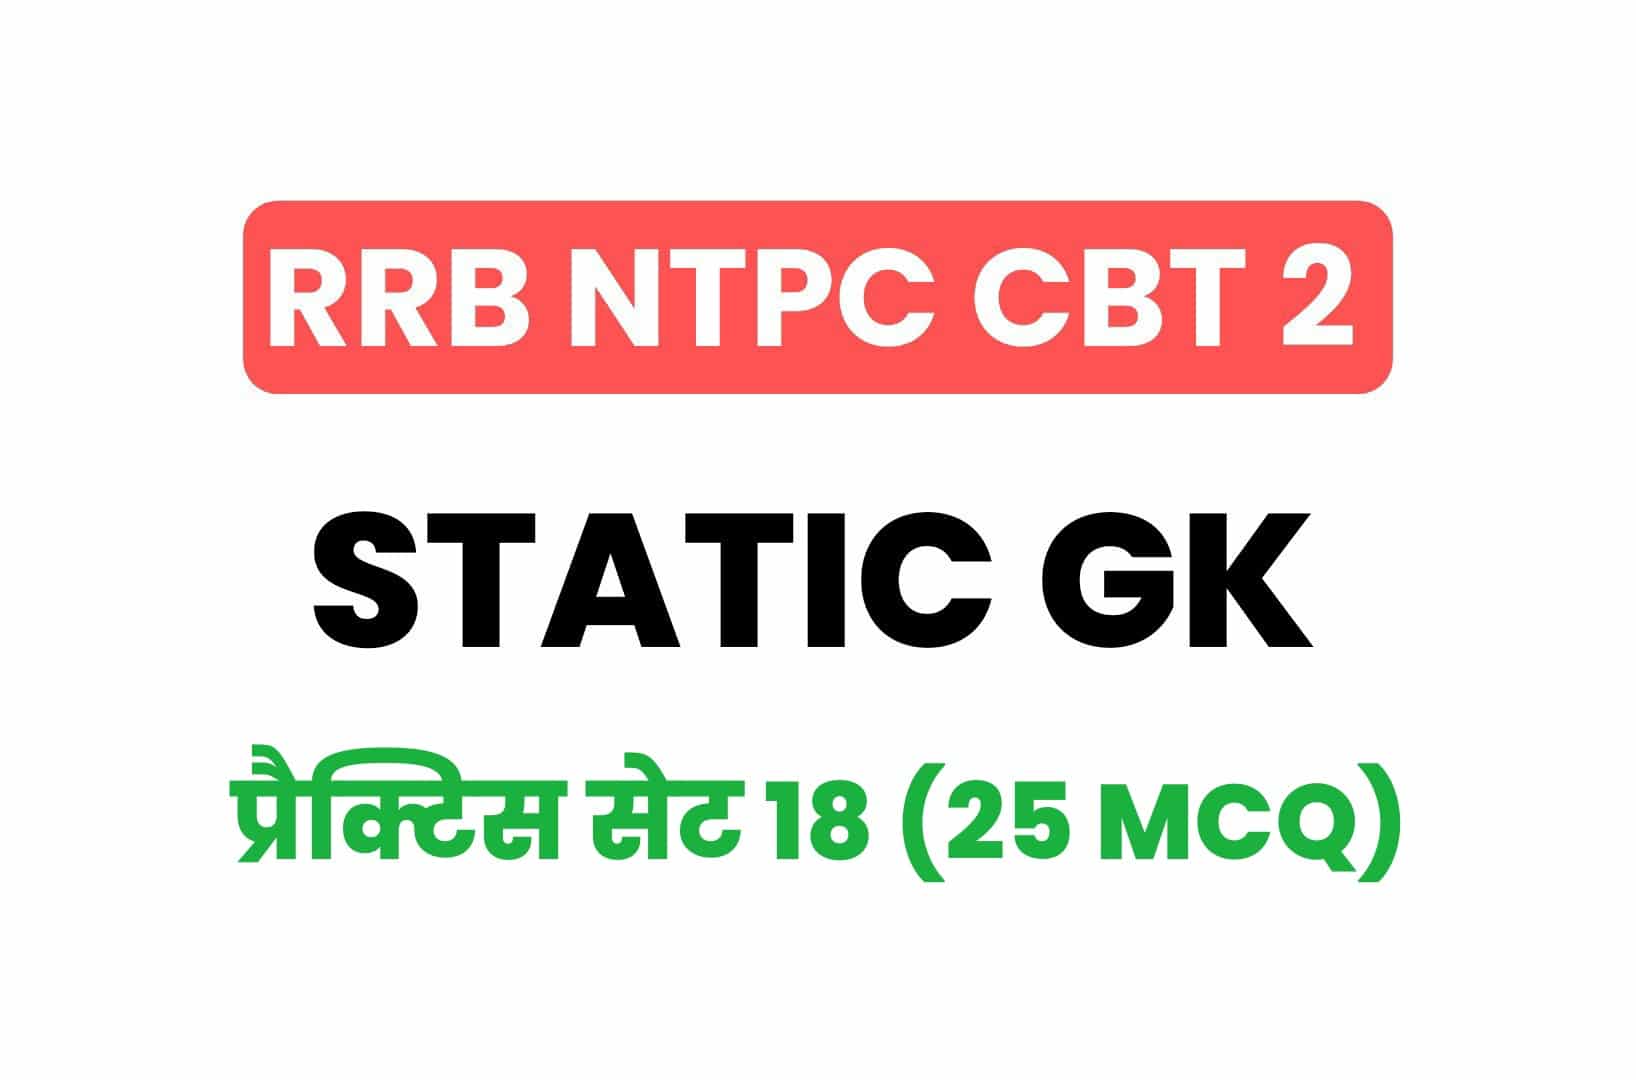 RRB NTPC CBT 2 Static GK प्रैक्टिस सेट 18: बचे इन आख़िरी दिनों में करें इन महत्वपूर्ण प्रश्नों का अध्ययन